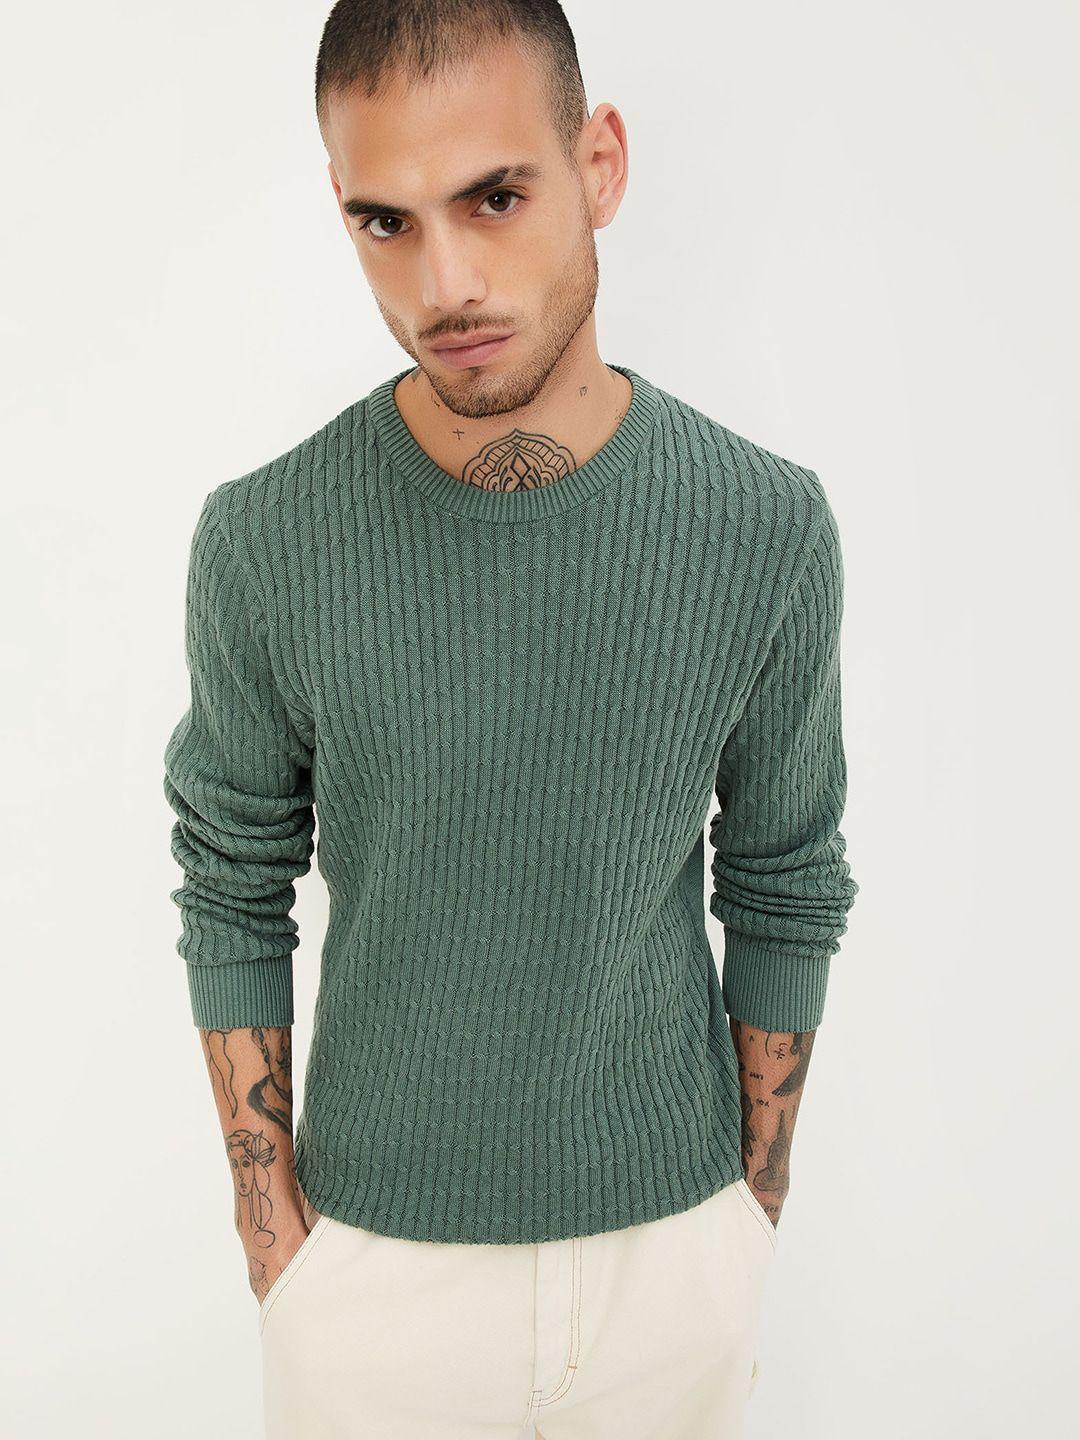 max-sellf-design-cotton-pullover